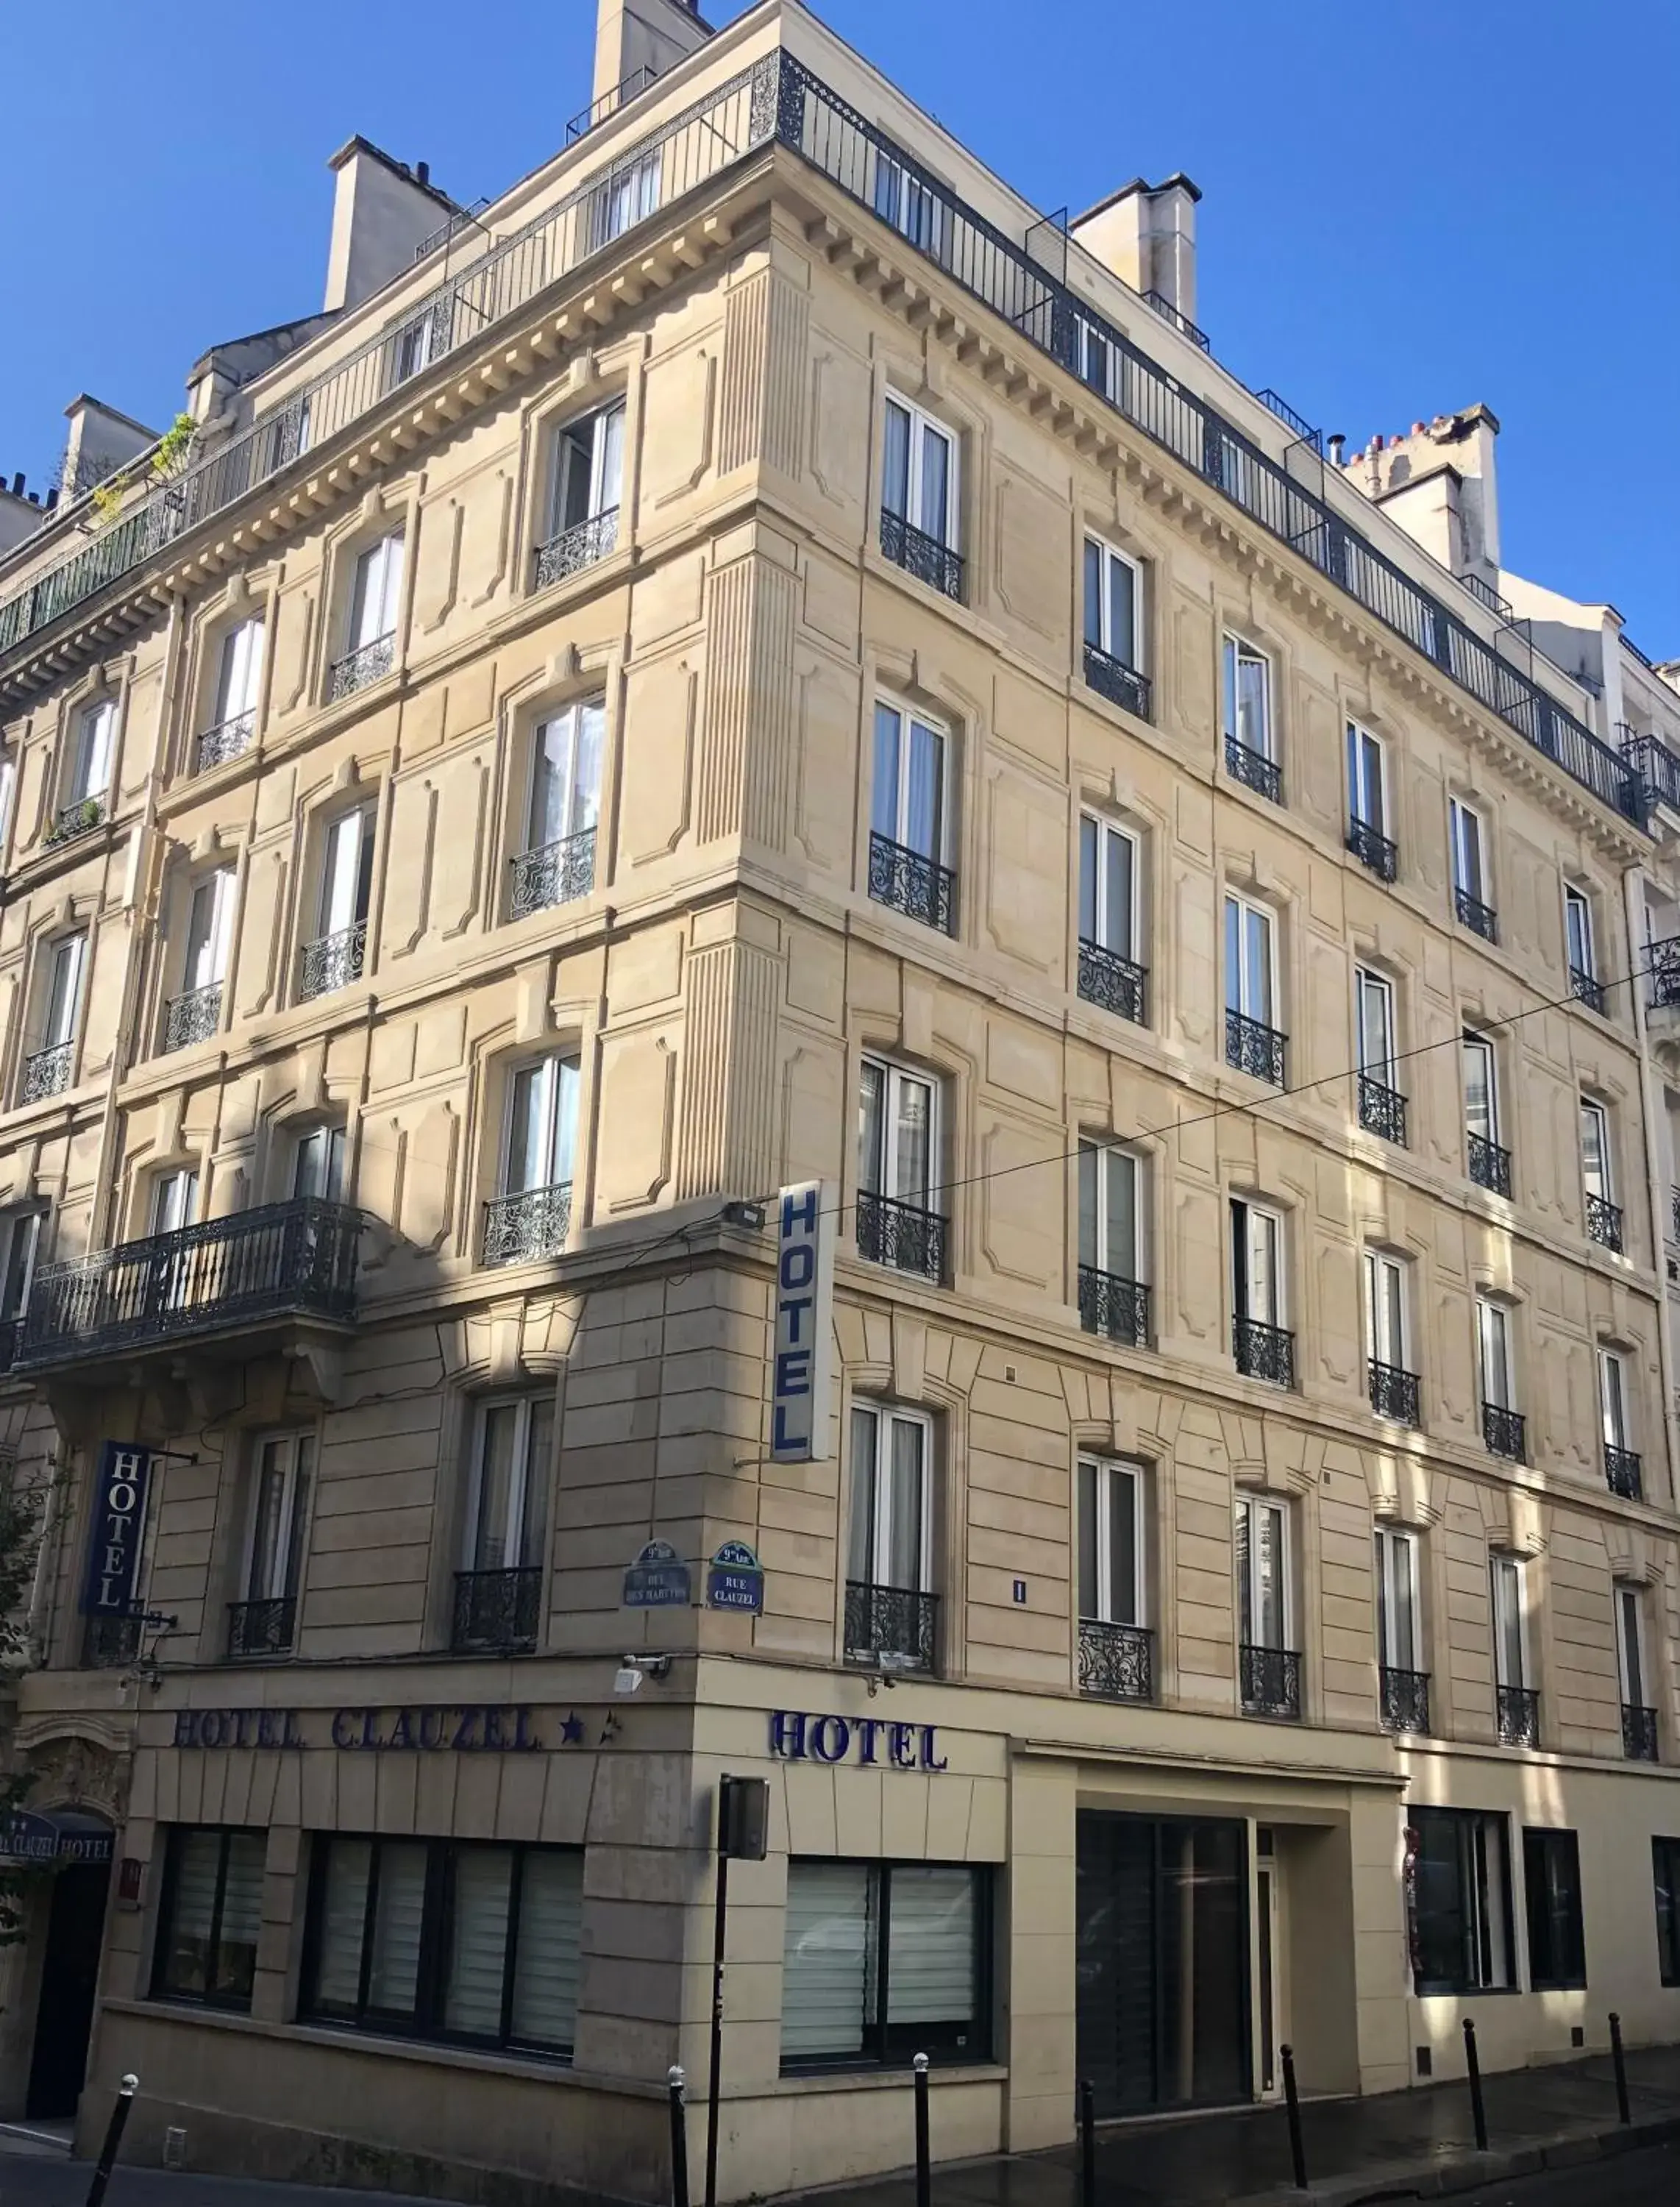 Property Building in Hôtel Clauzel Paris